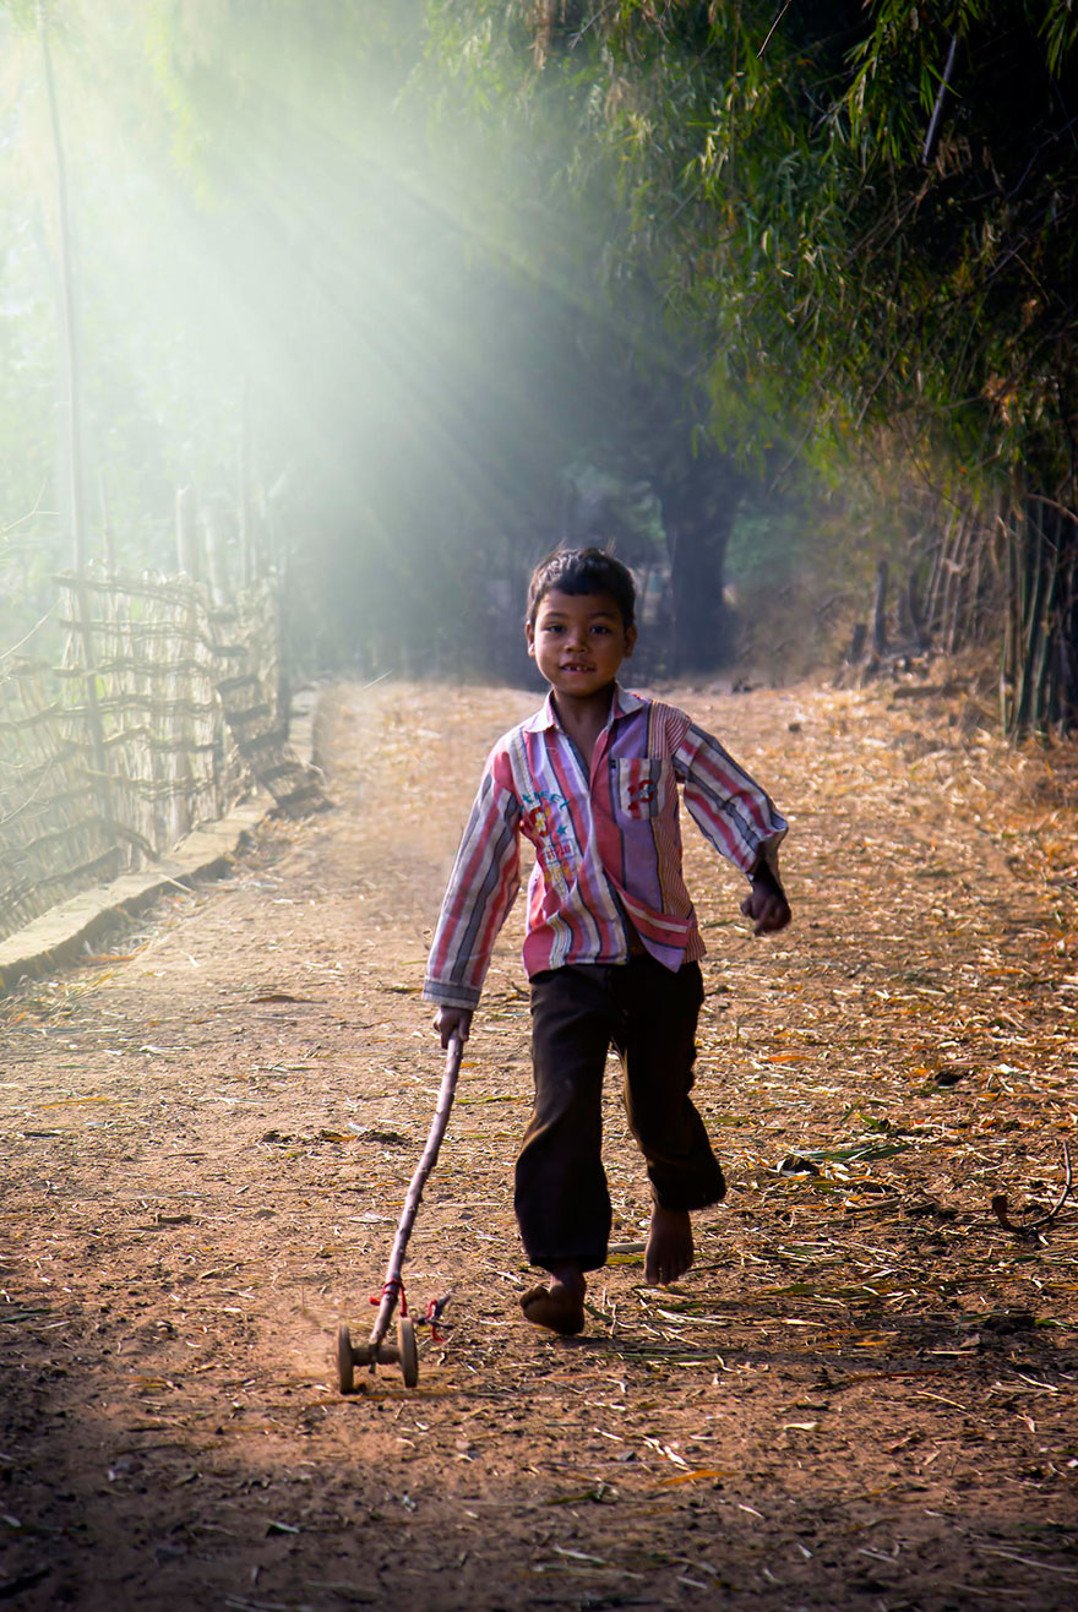 35 Fotos Mágicas de Niños Jugando Alrededor del Mundo